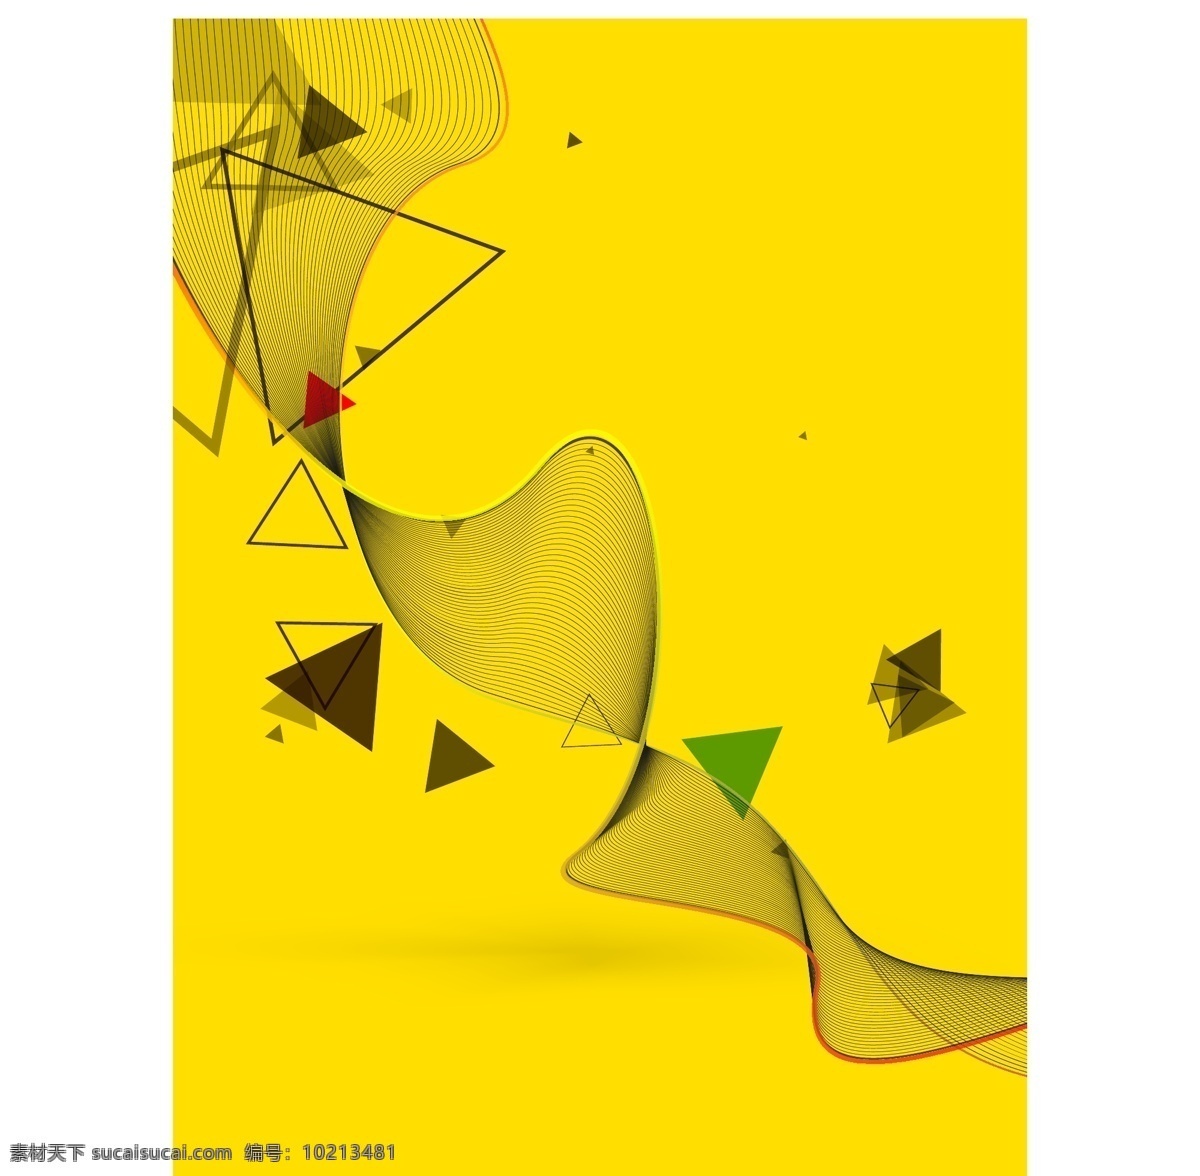 三角 几何 纹理 黄色 商务 矢量 背景 黄色背景 商务背景 封面设计 书籍封面 画册封面 三角几何 纹理背景 杂志封面设计